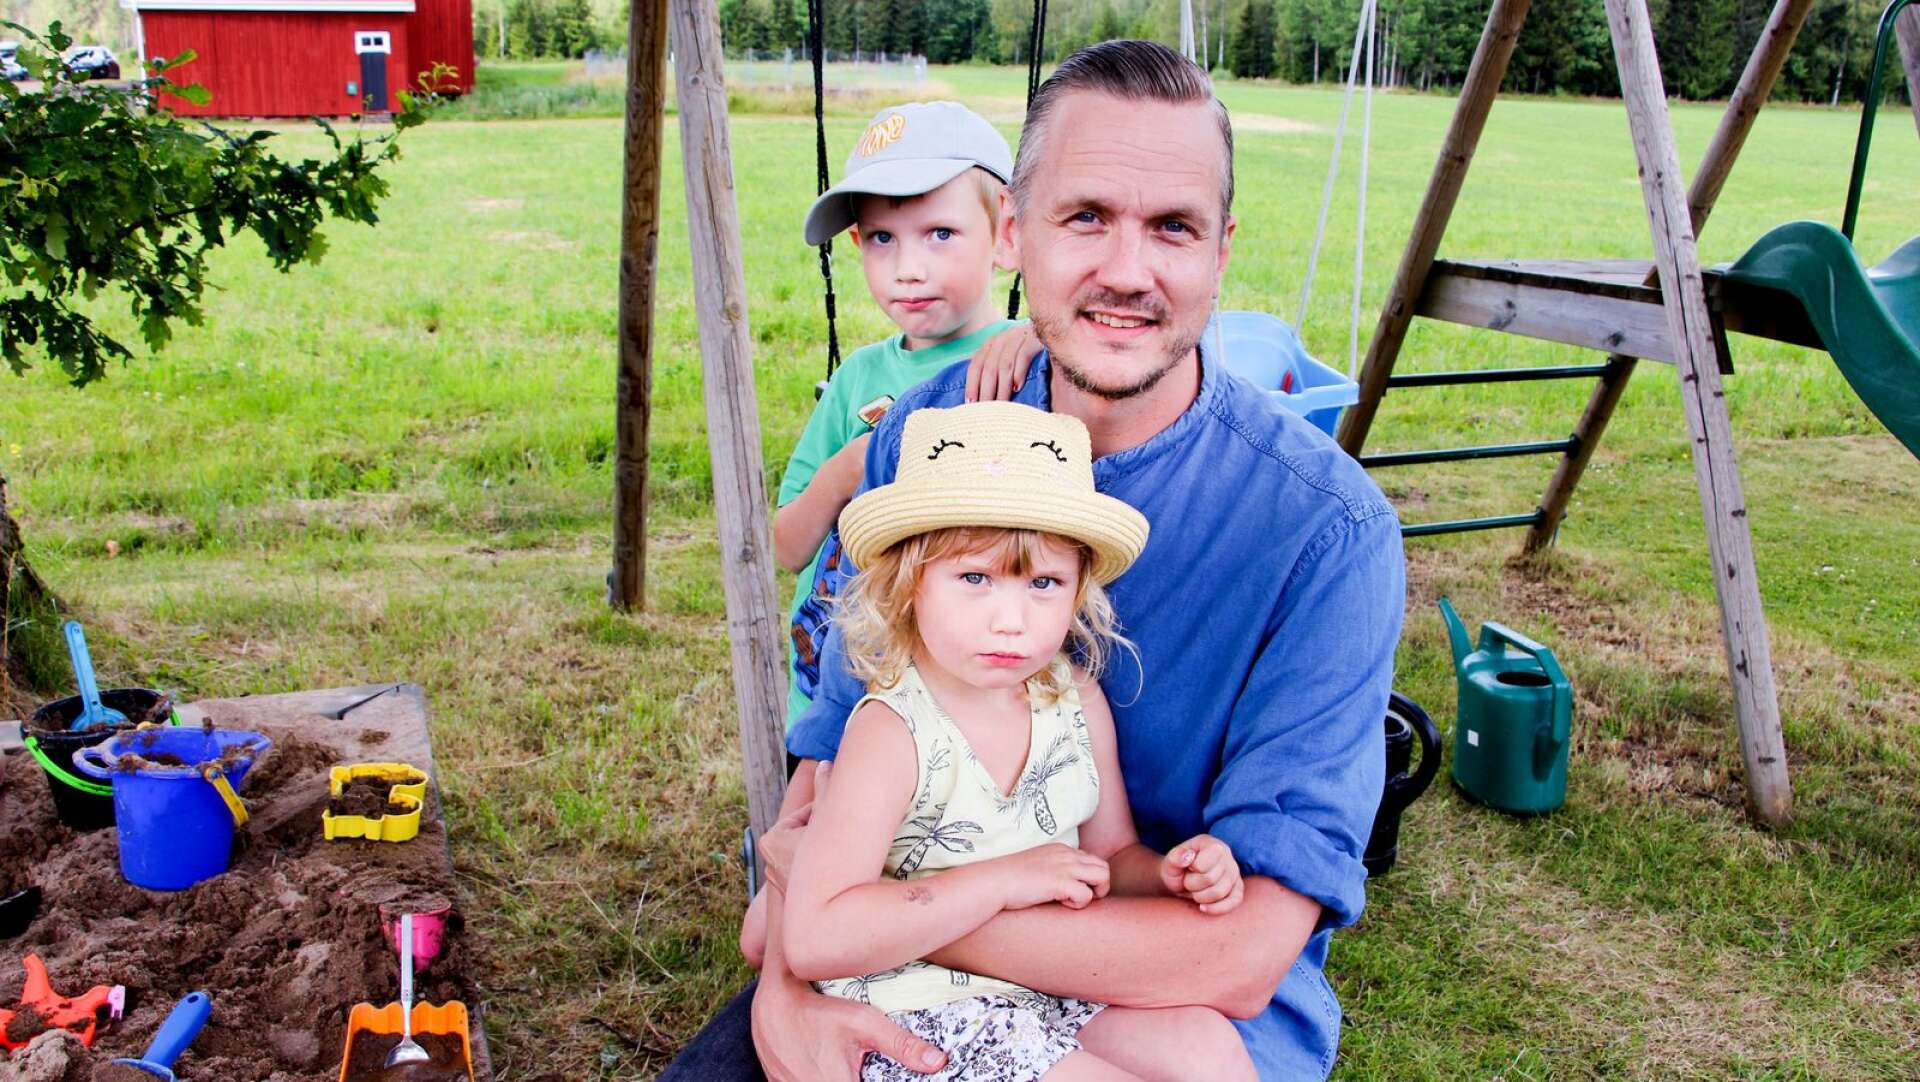 Markus Kylén trivs gott under somrarna som han spenderar tillsammans med frun Carin och barnen Bill, 7, och Lou, 4, på barndomsgården i Sillerud.